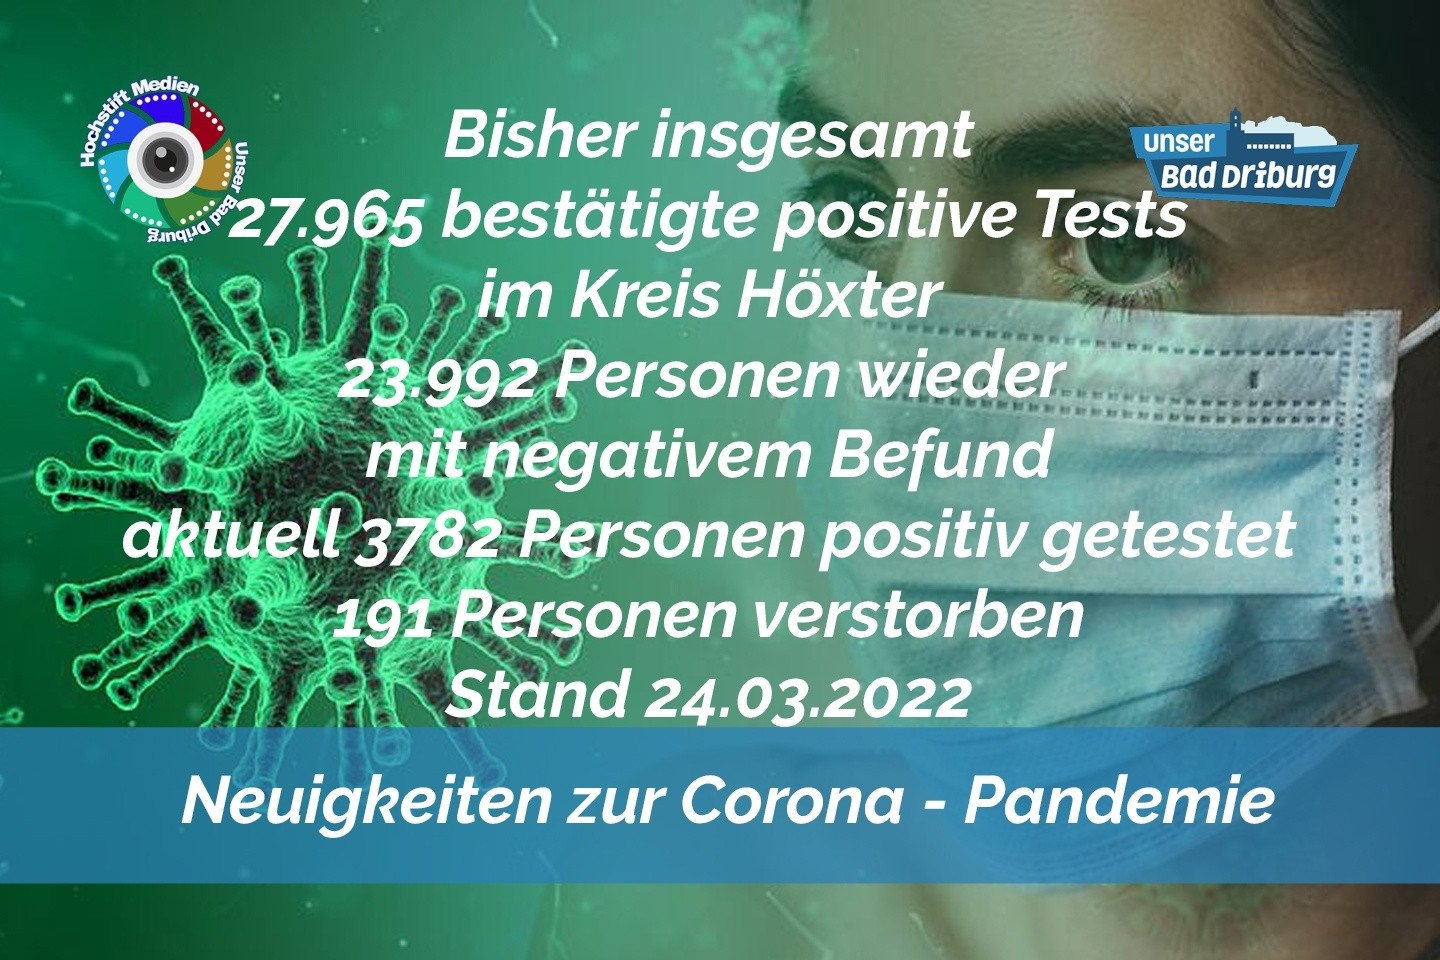 Update 24. März 2022: 522 weitere amtlich positive Tests im Kreis Höxter